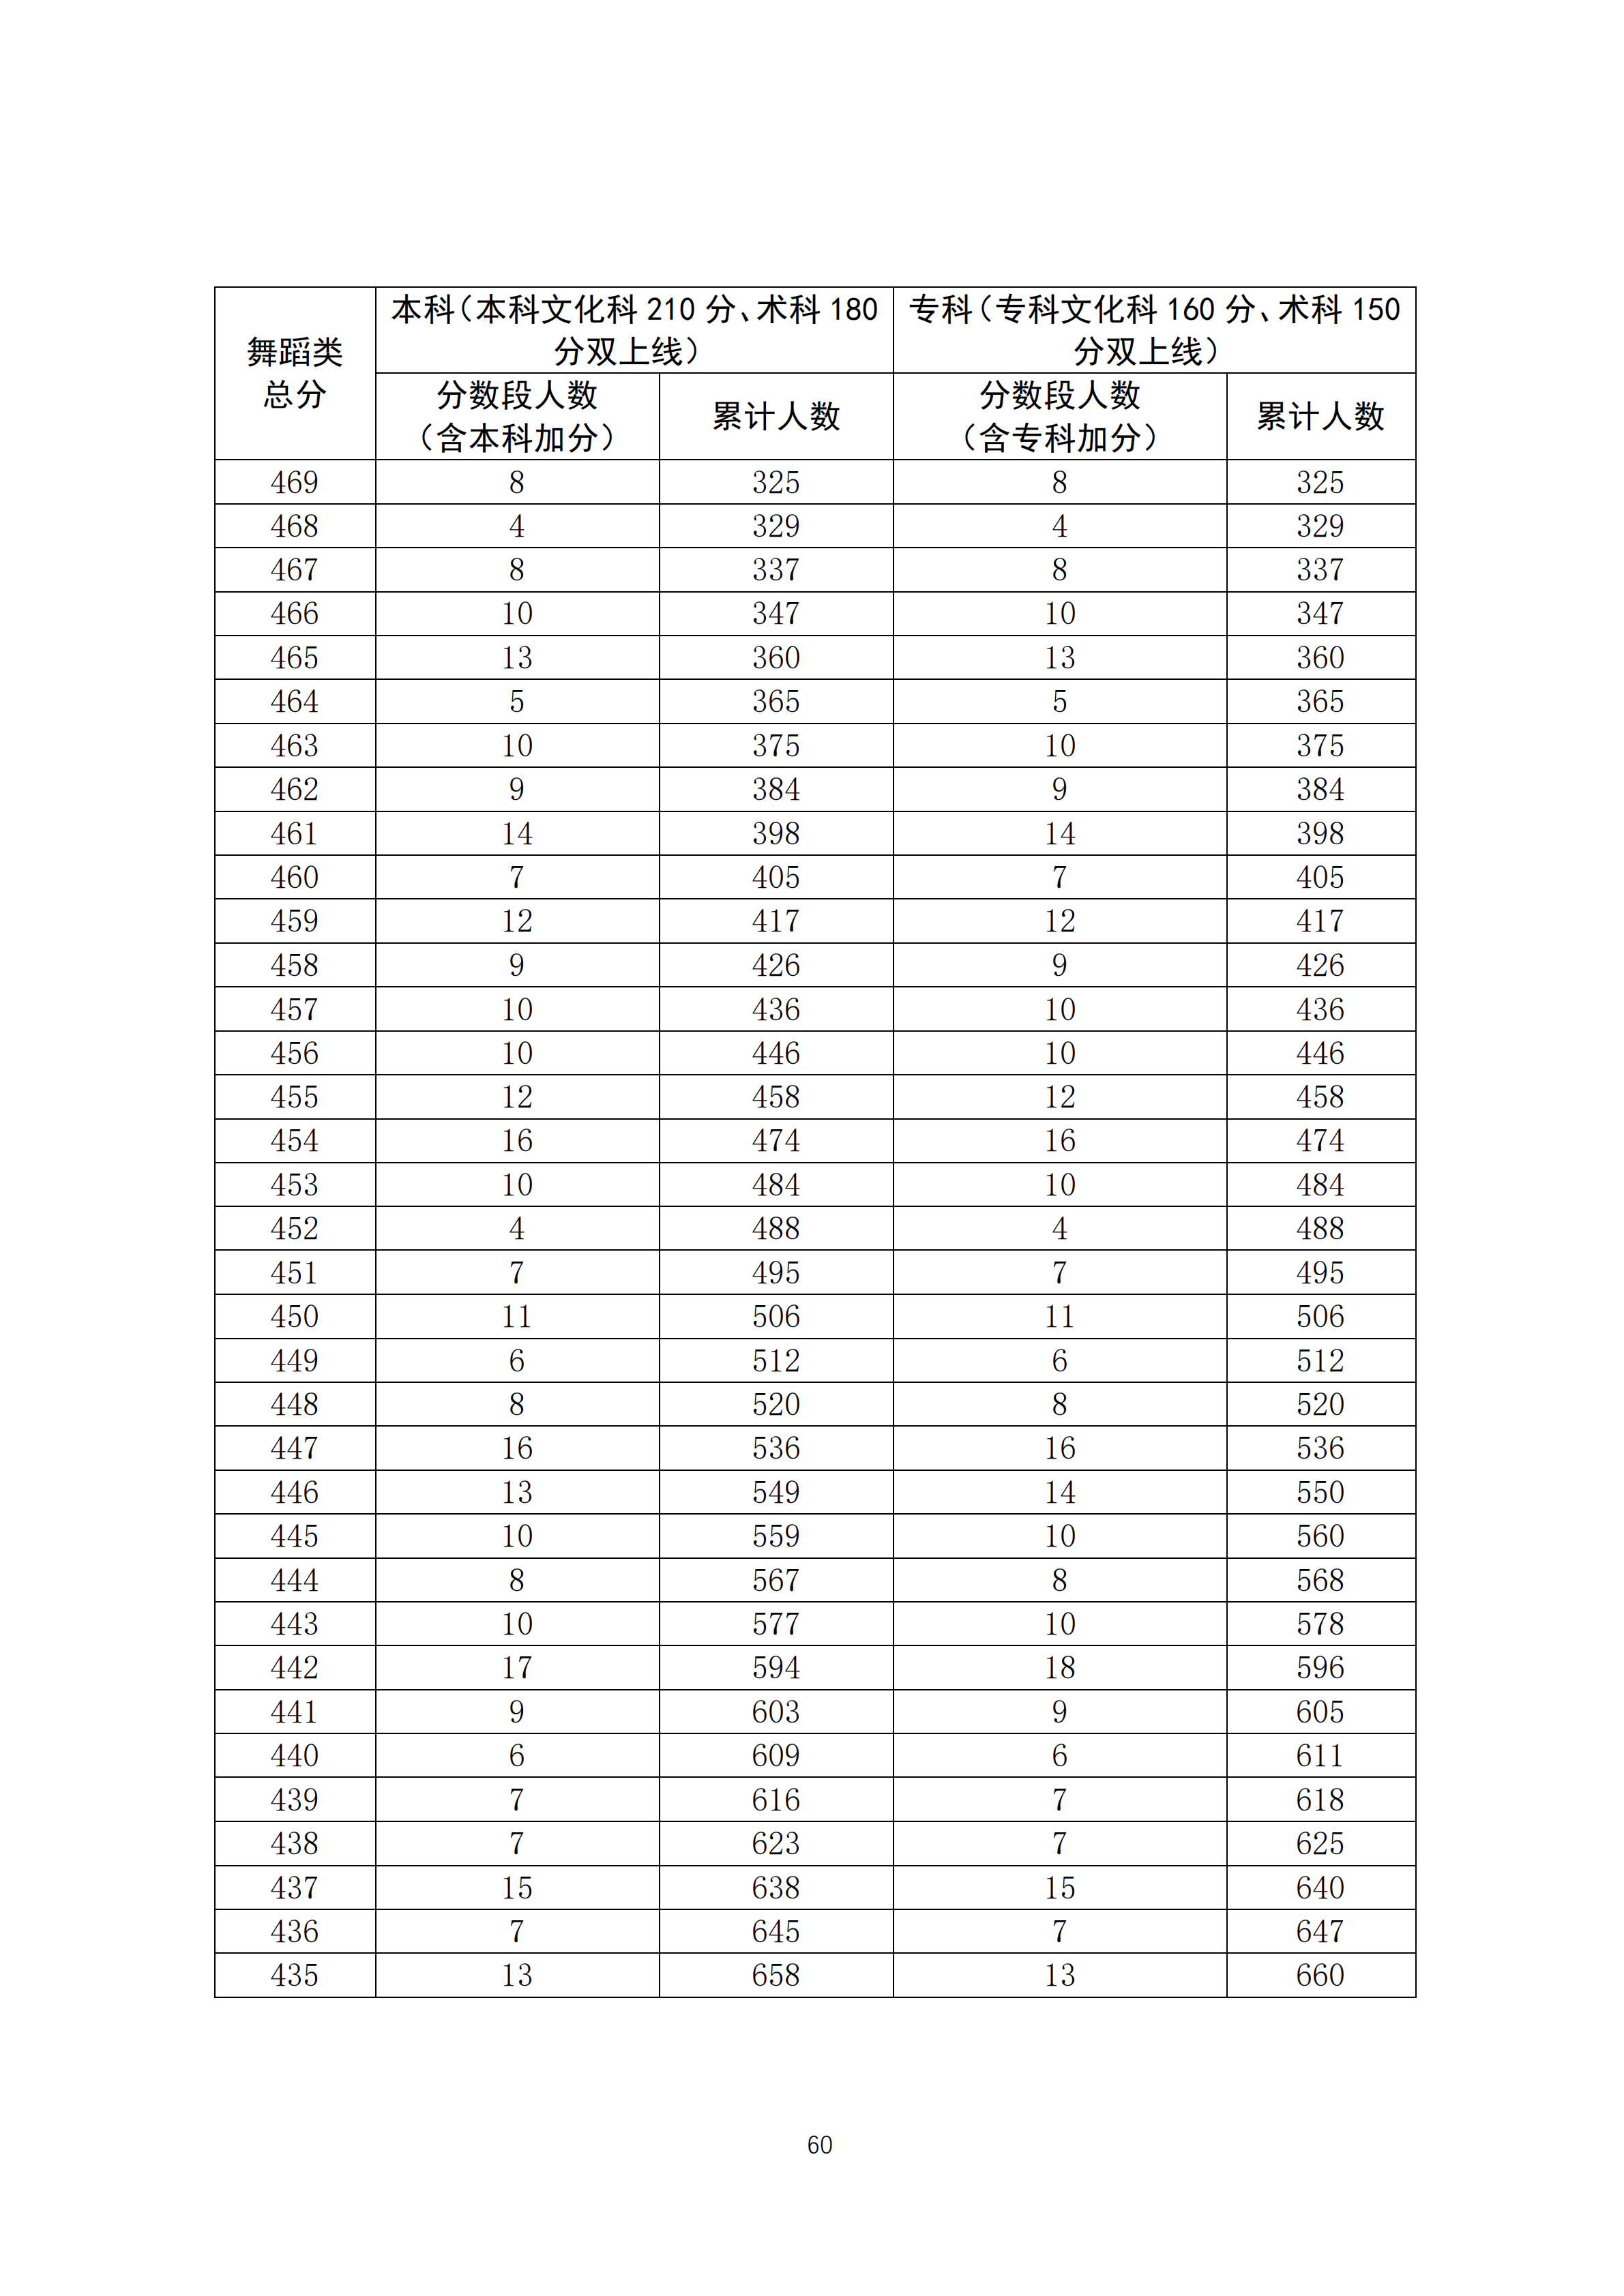 2020广东高考一分一段表 舞蹈类成绩排名